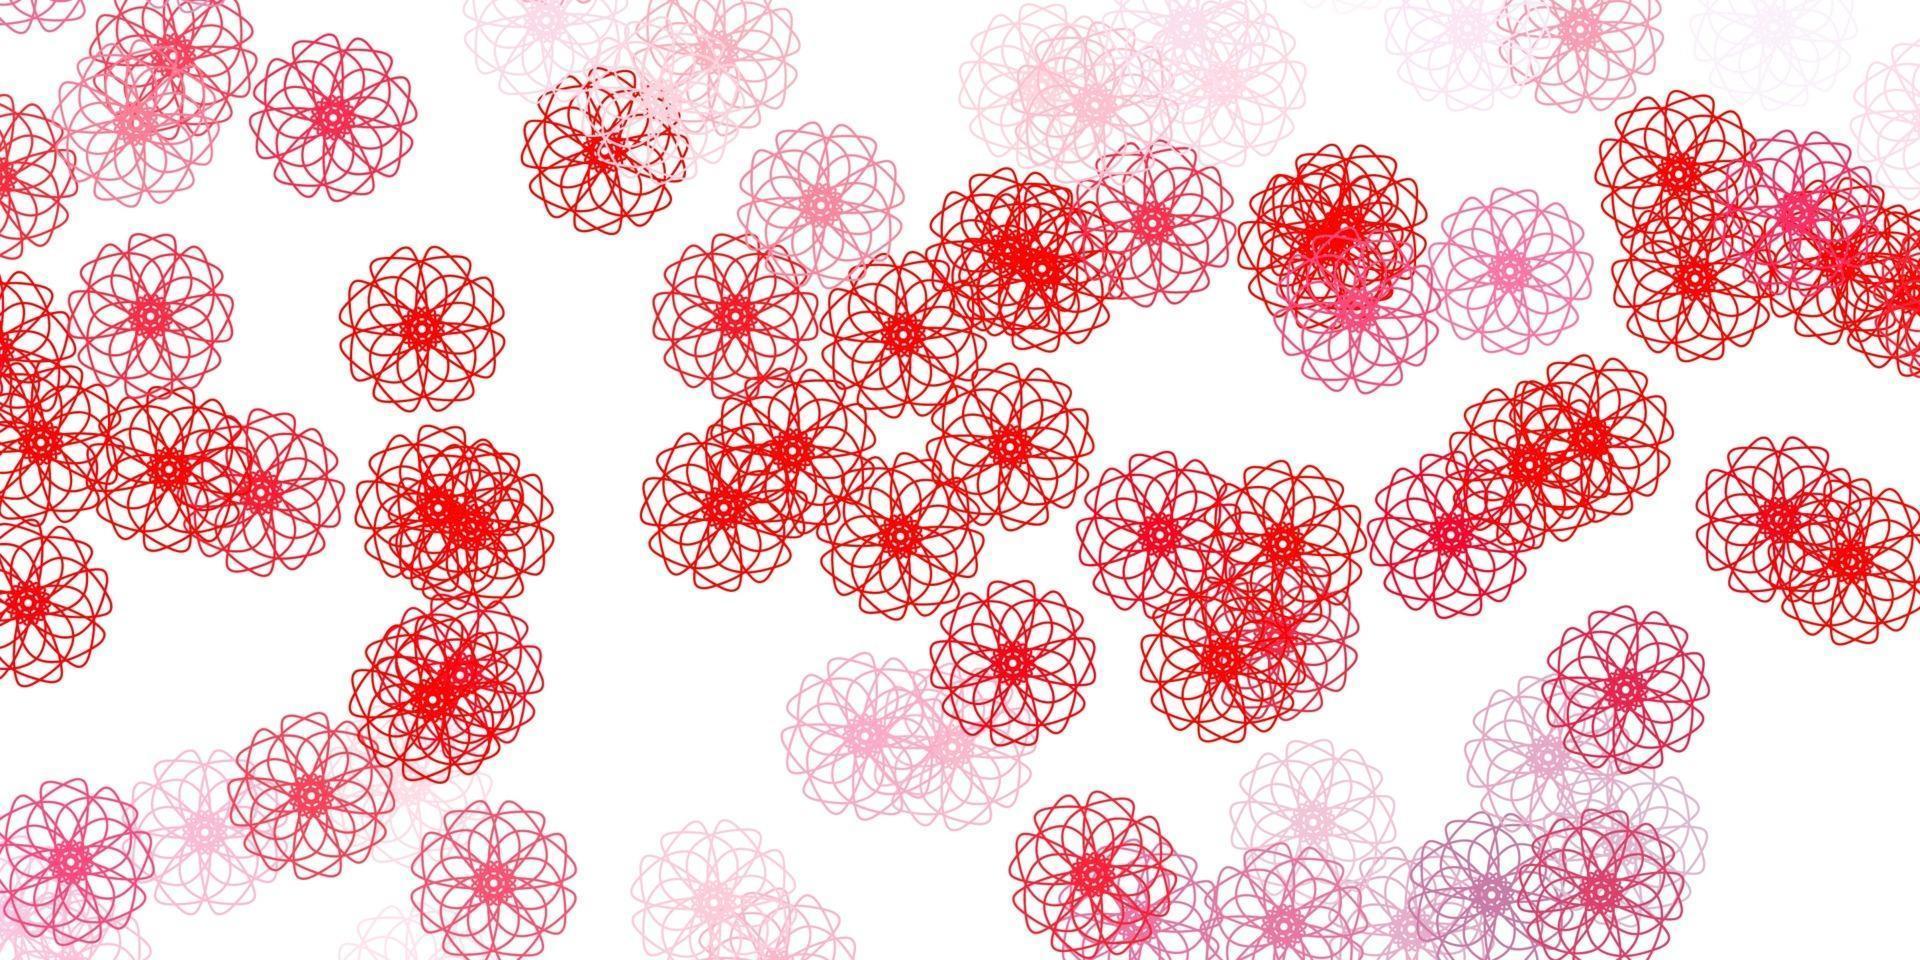 textura de doodle de vector rojo claro con flores.